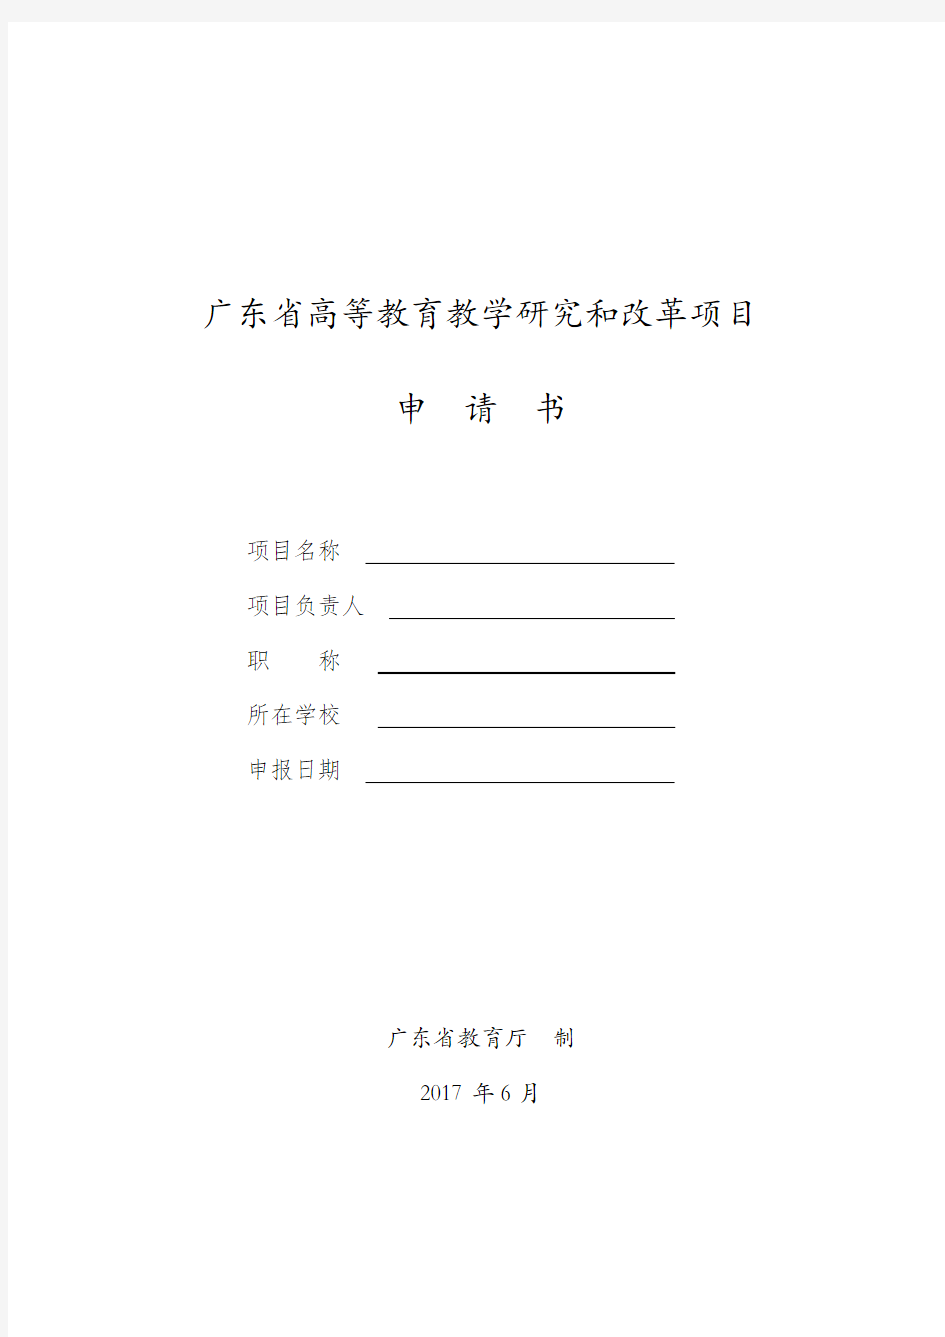 广东省高等教育教学研究和改革项目